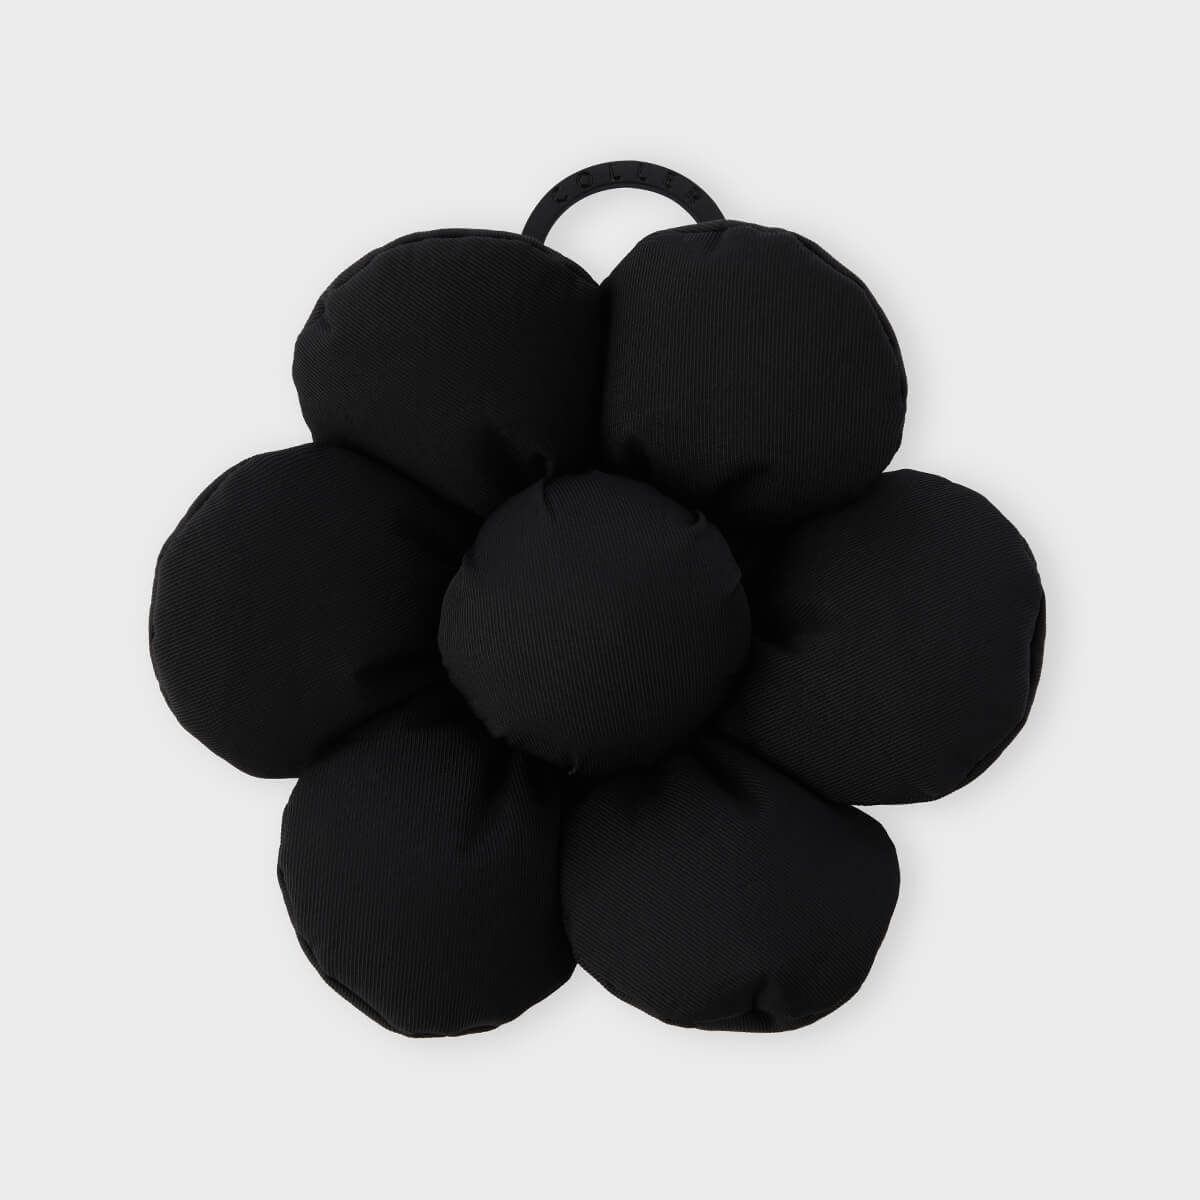 COLLER Padded Big Flower Keyring Black